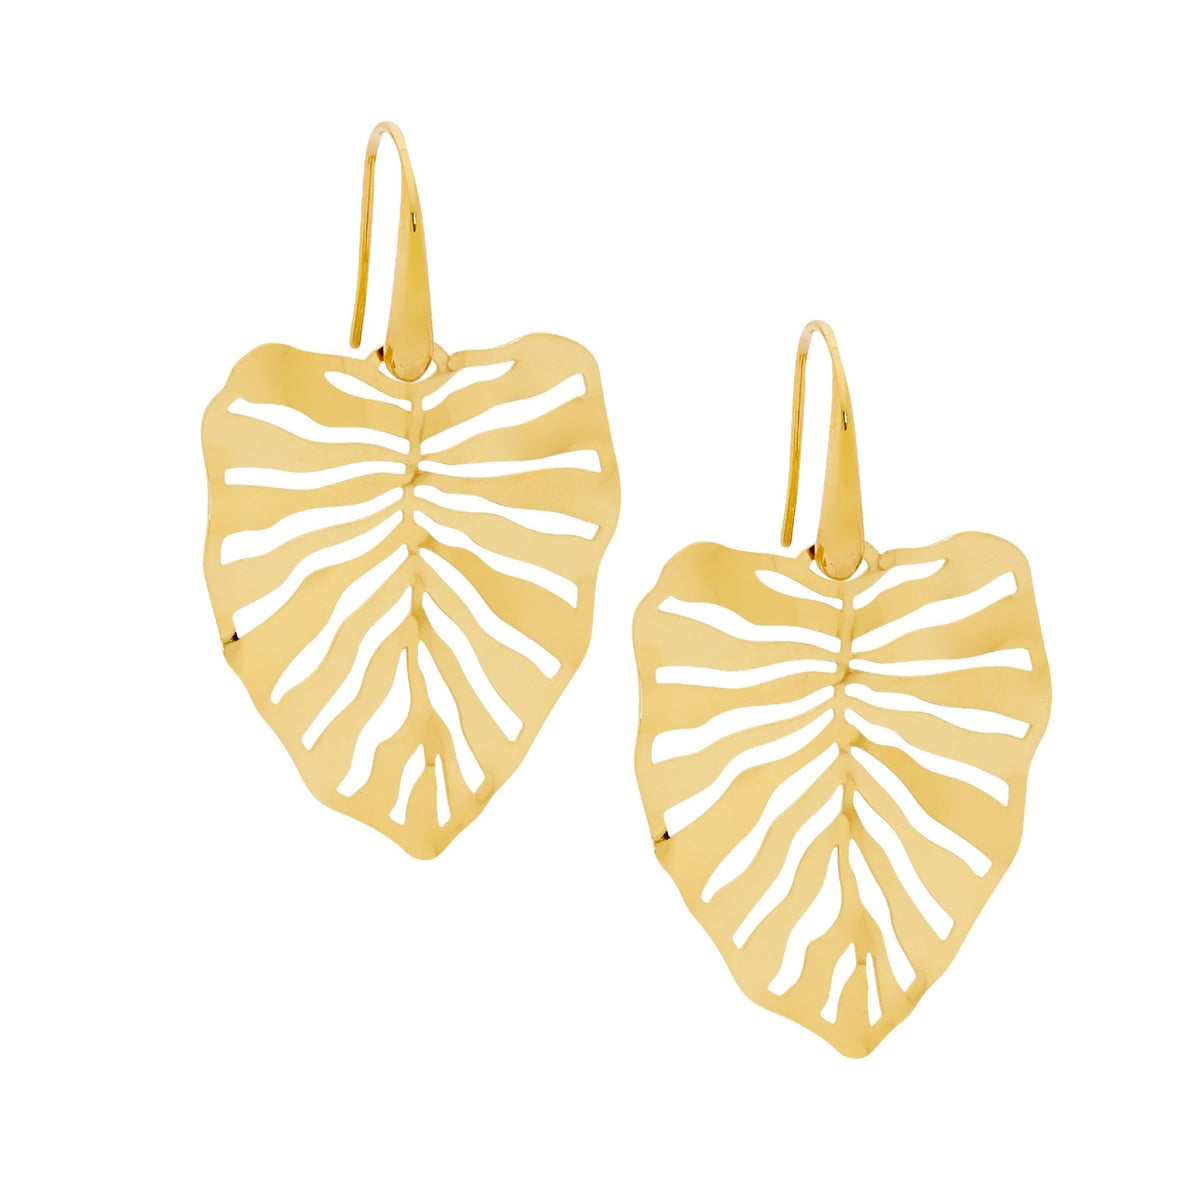 Stainless Steel Earring Gold - SE259G - Markbridge Jewellers